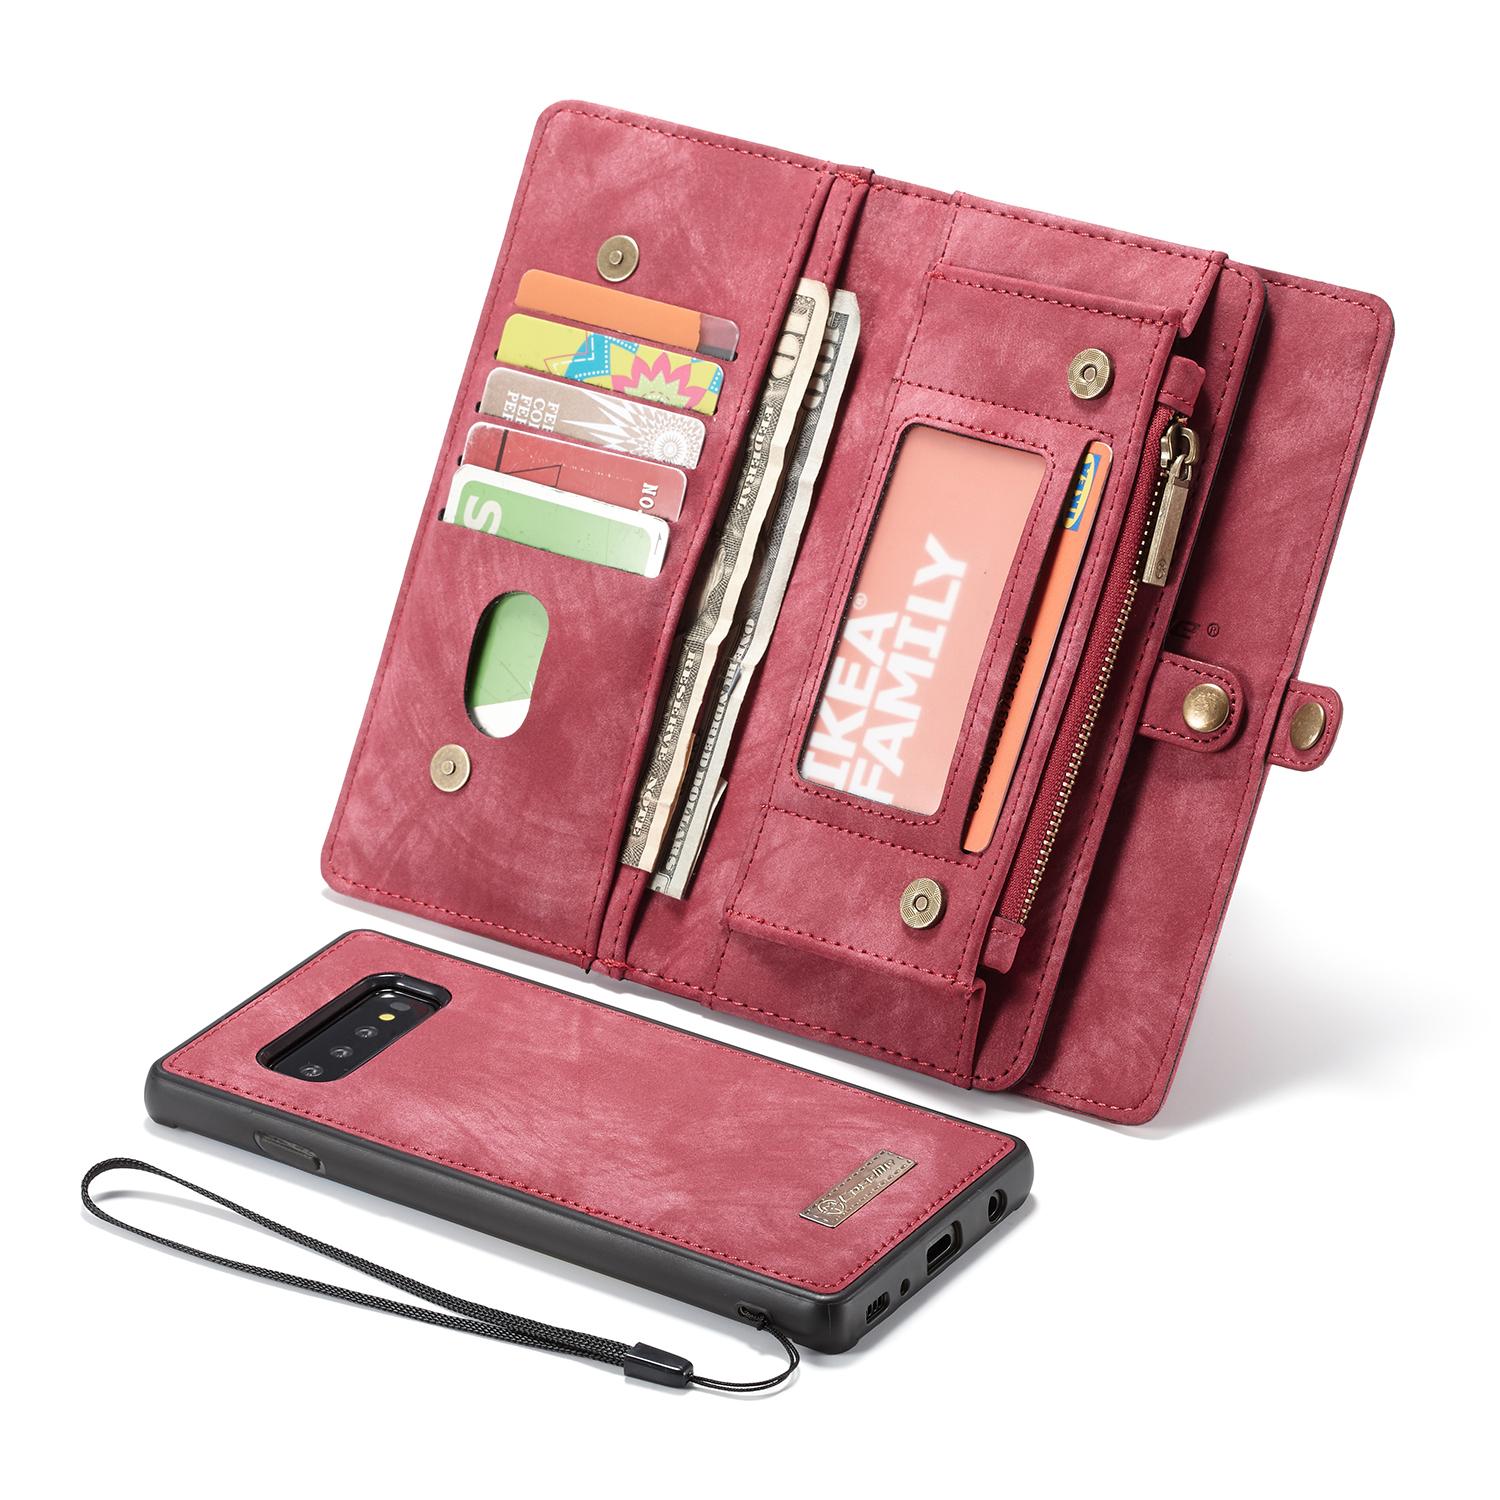 Samsung Galaxy S10 Rymligt plånboksfodral med många kortfack, röd